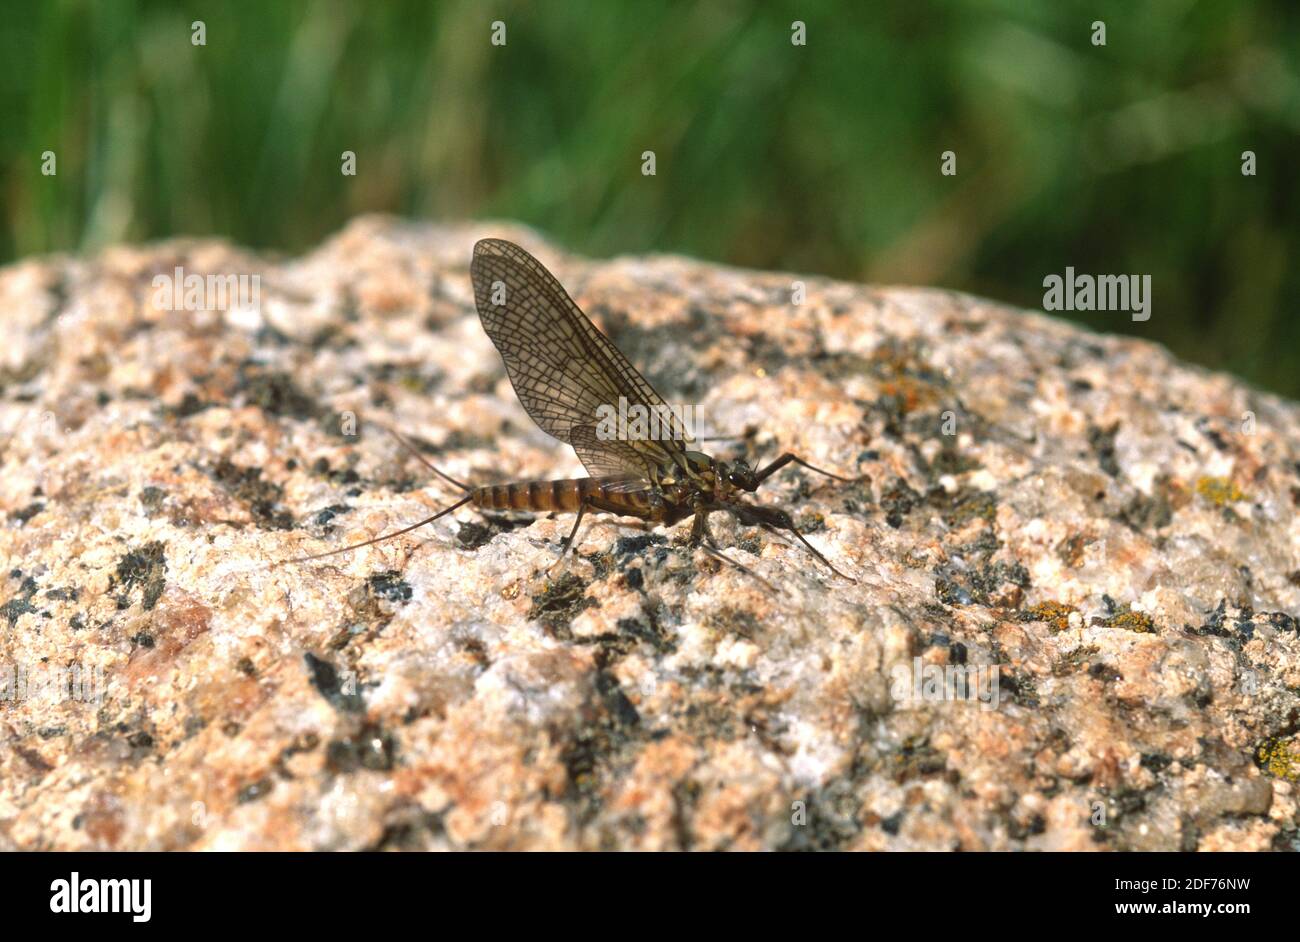 La mouche brune de mars (Rhithrogena germanica) est un insecte utilisé pour la pêche à la mouche. Cette photo a été prise près de Setcases, province de Gérone, Catalogne, Espagne. Banque D'Images